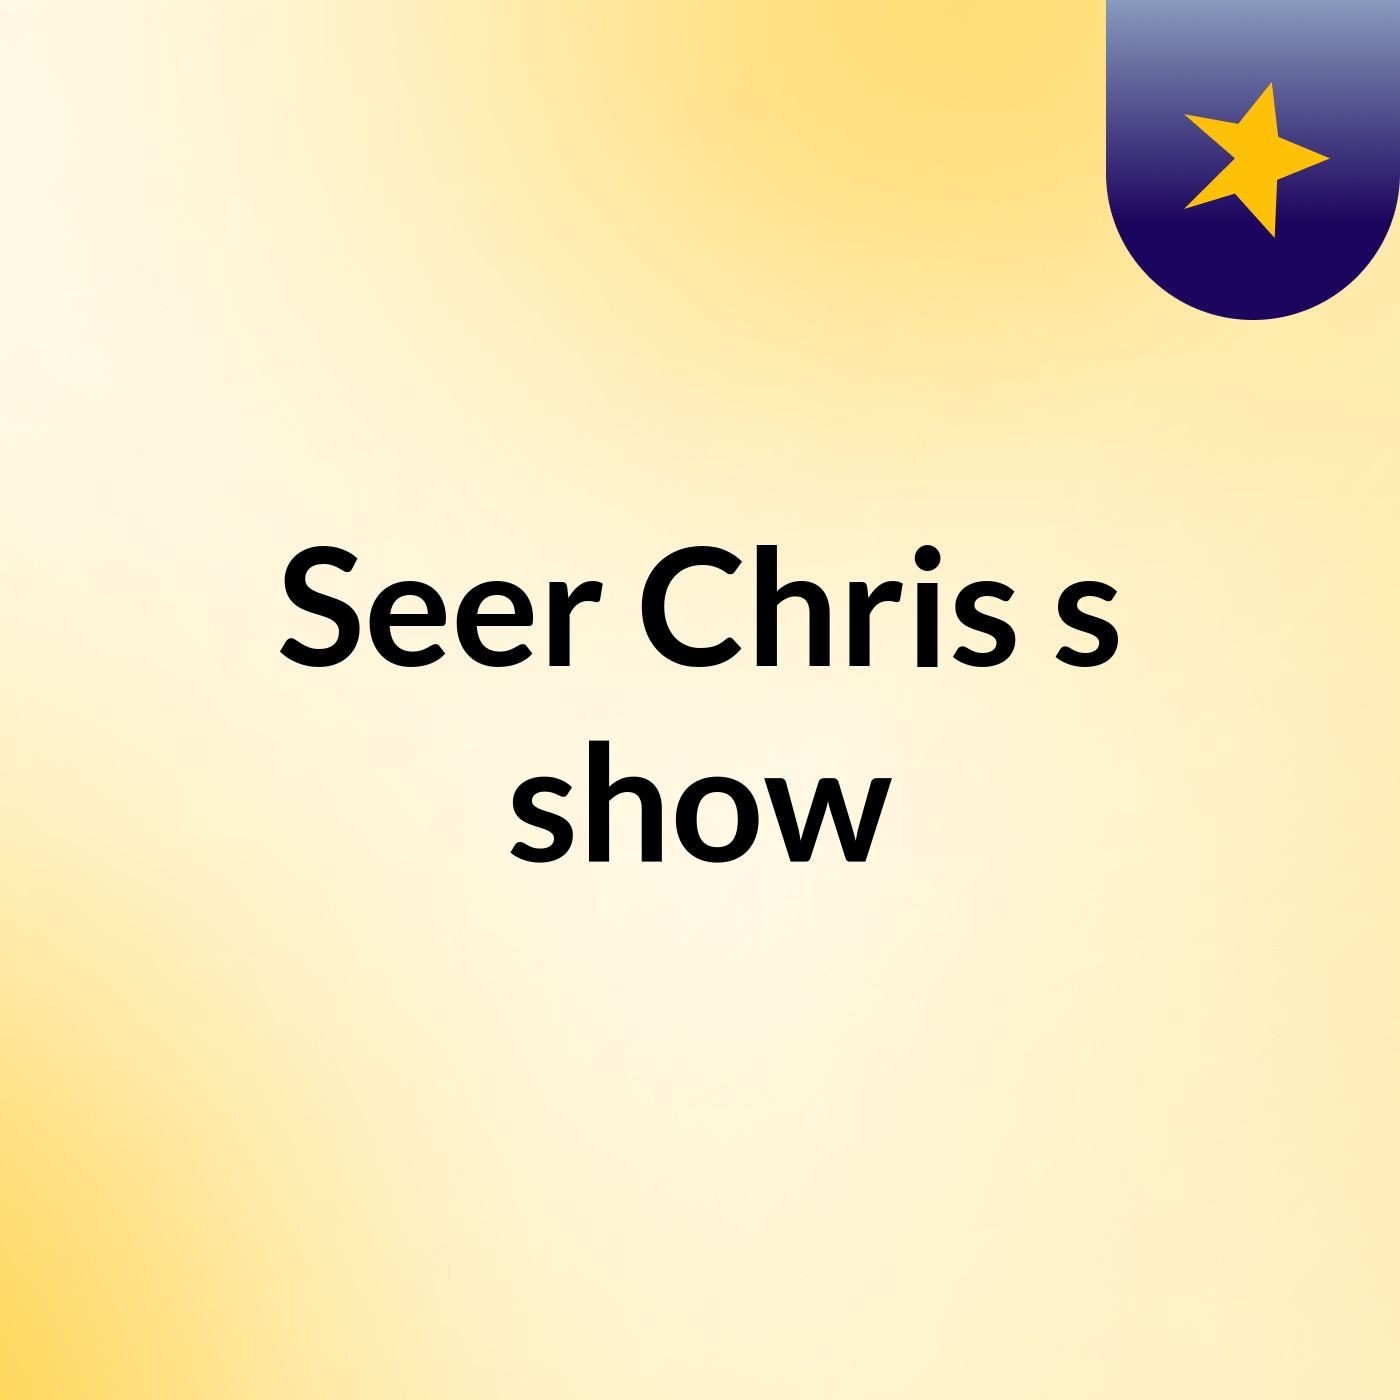 Episode 3 - Seer Chris's show